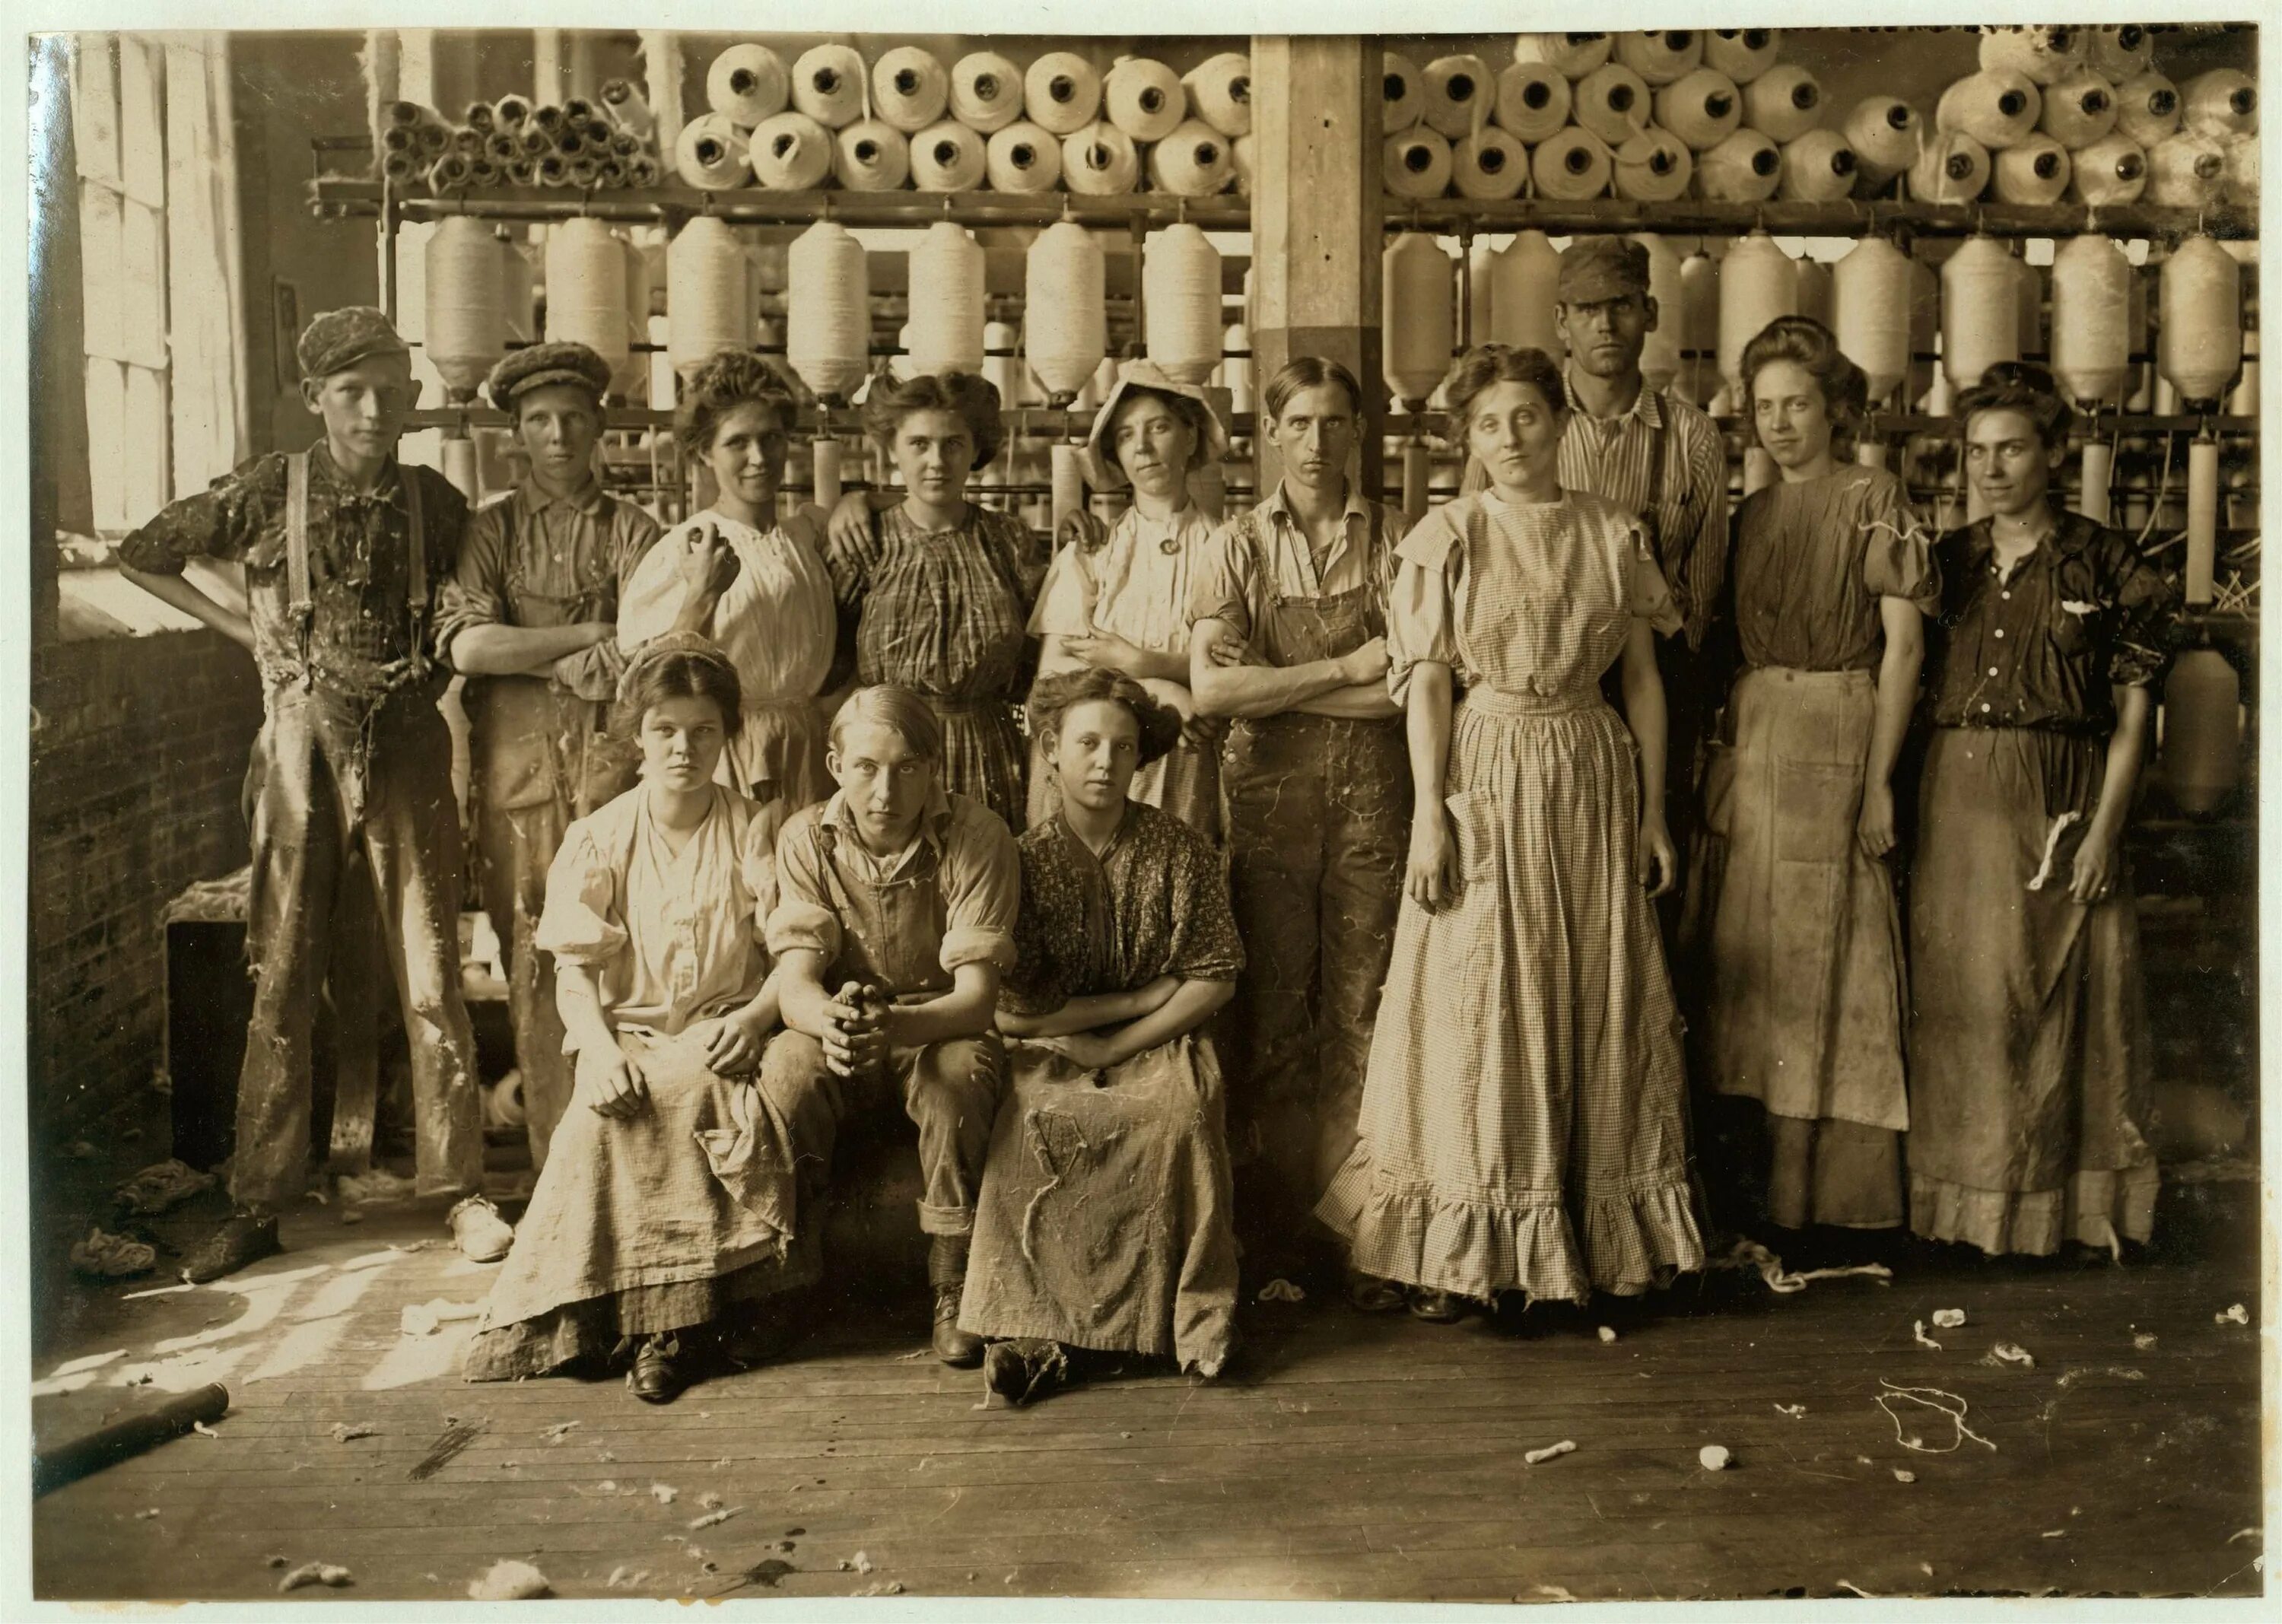 Как жил рабочий класс. Работницы на ткацкой фабрике 19 век Англия. Фабрика в начале 20 века в США. Ткацкая фабрика Великобритании 20 век. Работницы фабрик начала 20 века.